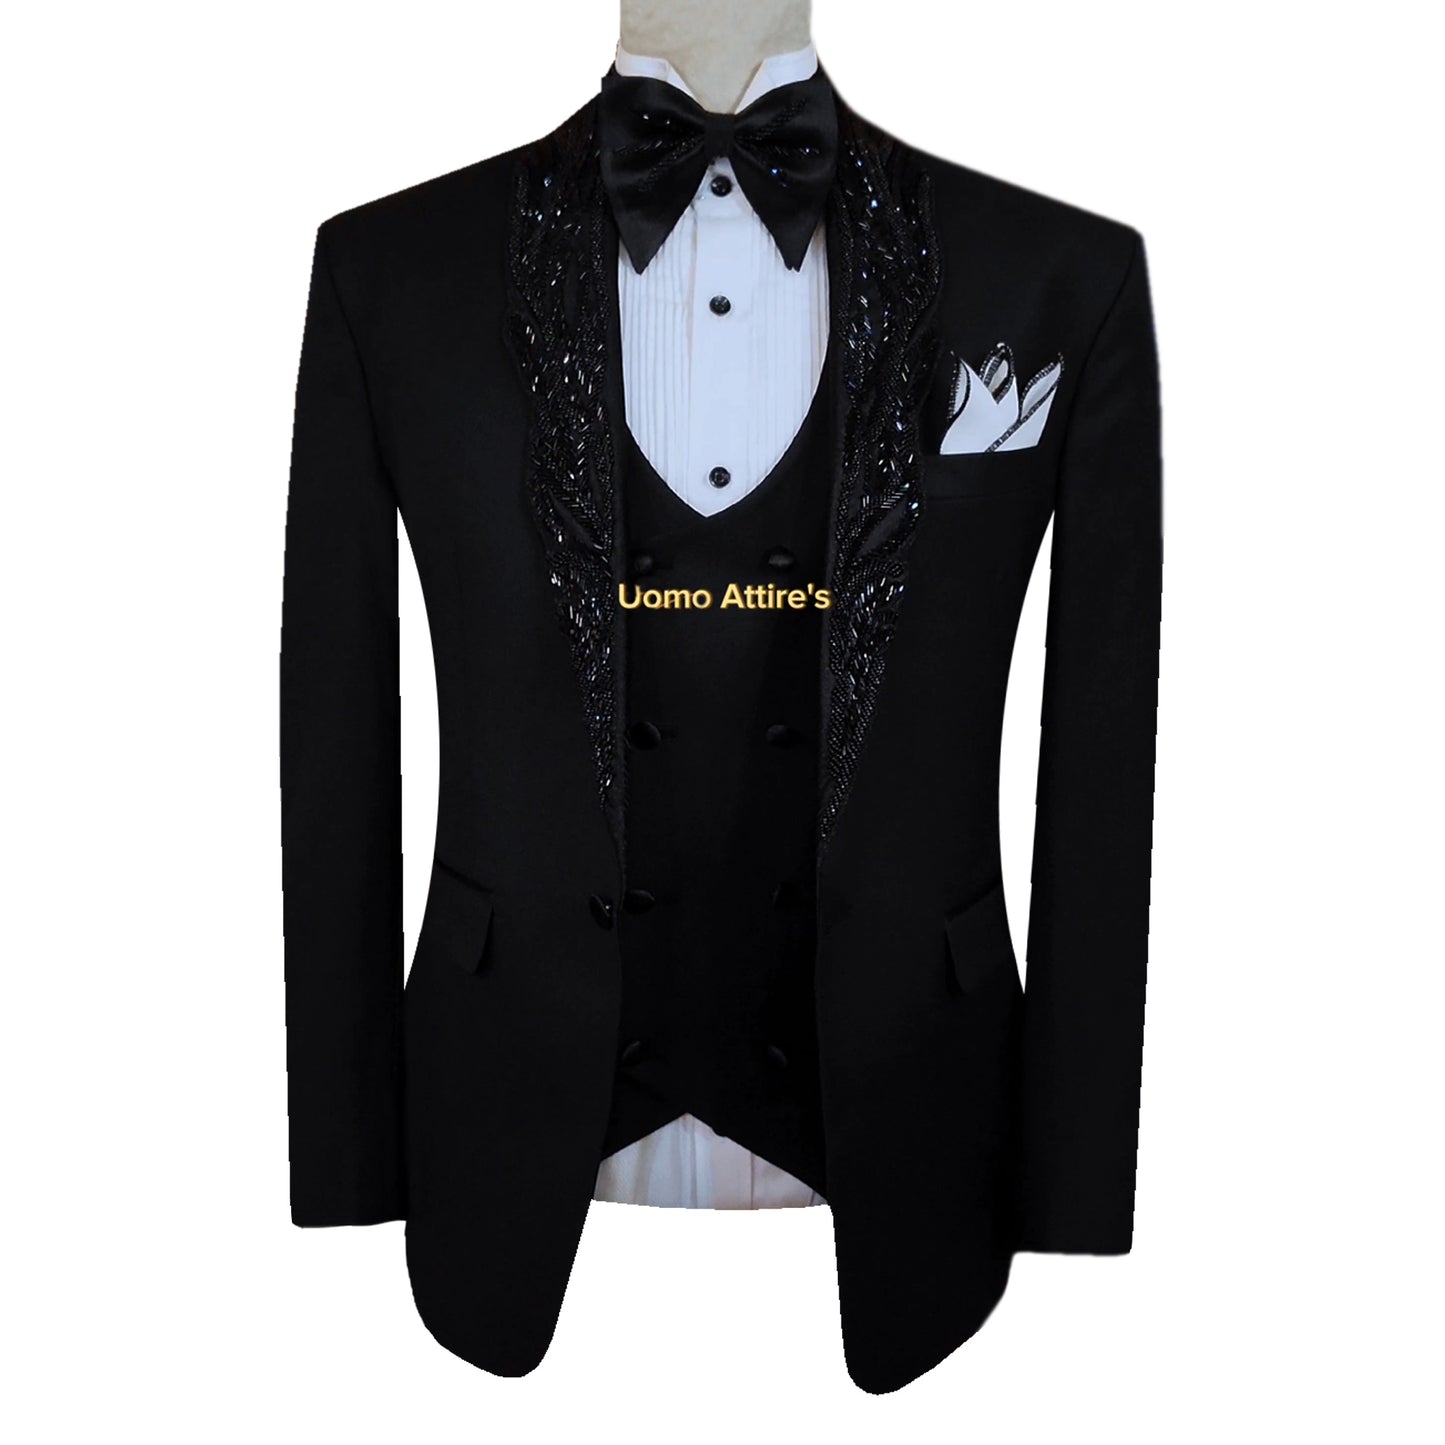 Black Designer Tuxedo Suit with Embellished Shawl